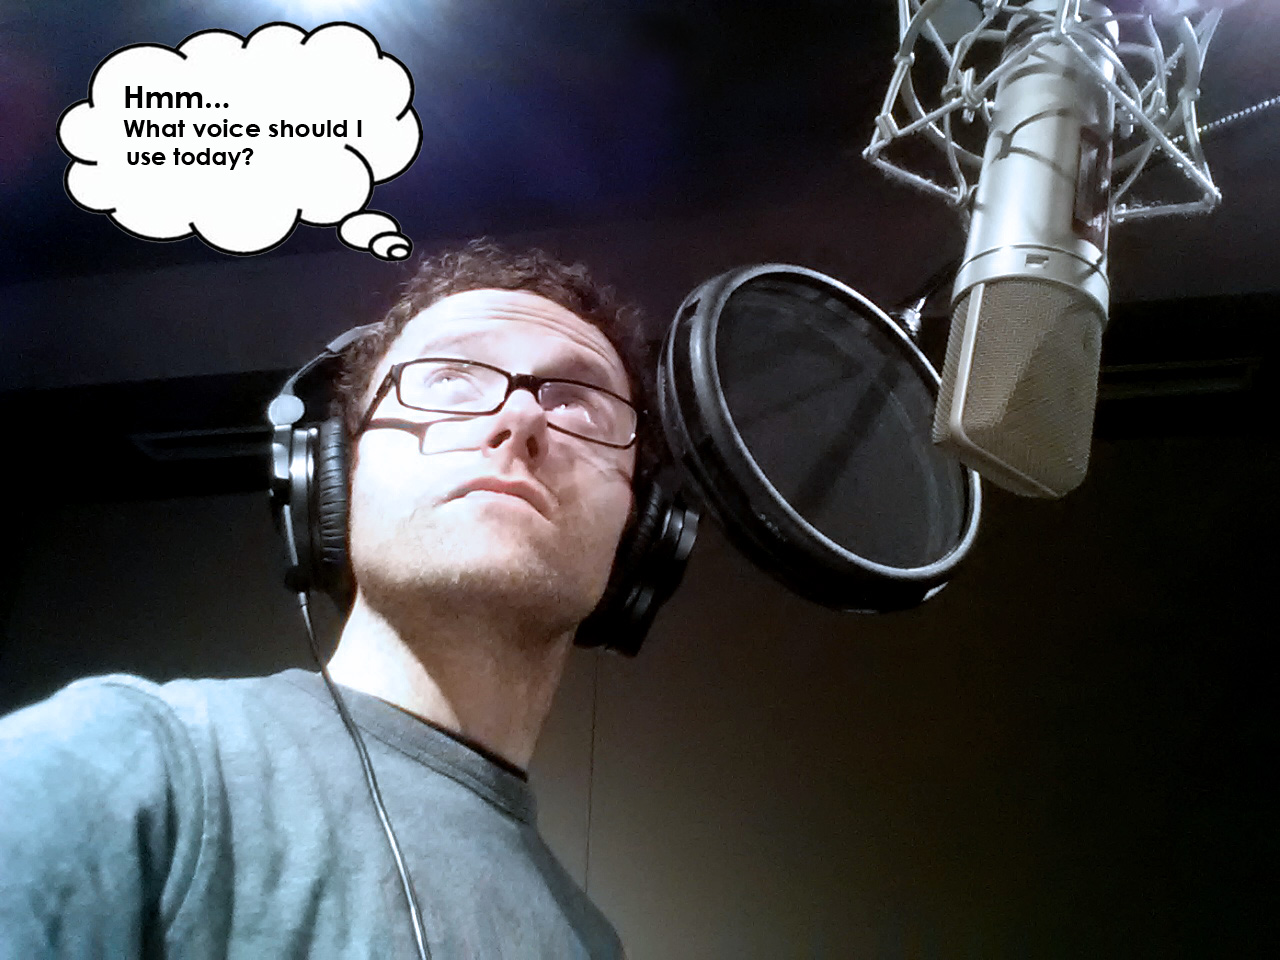 Dave McRae, professional voice artist in studio, 2013